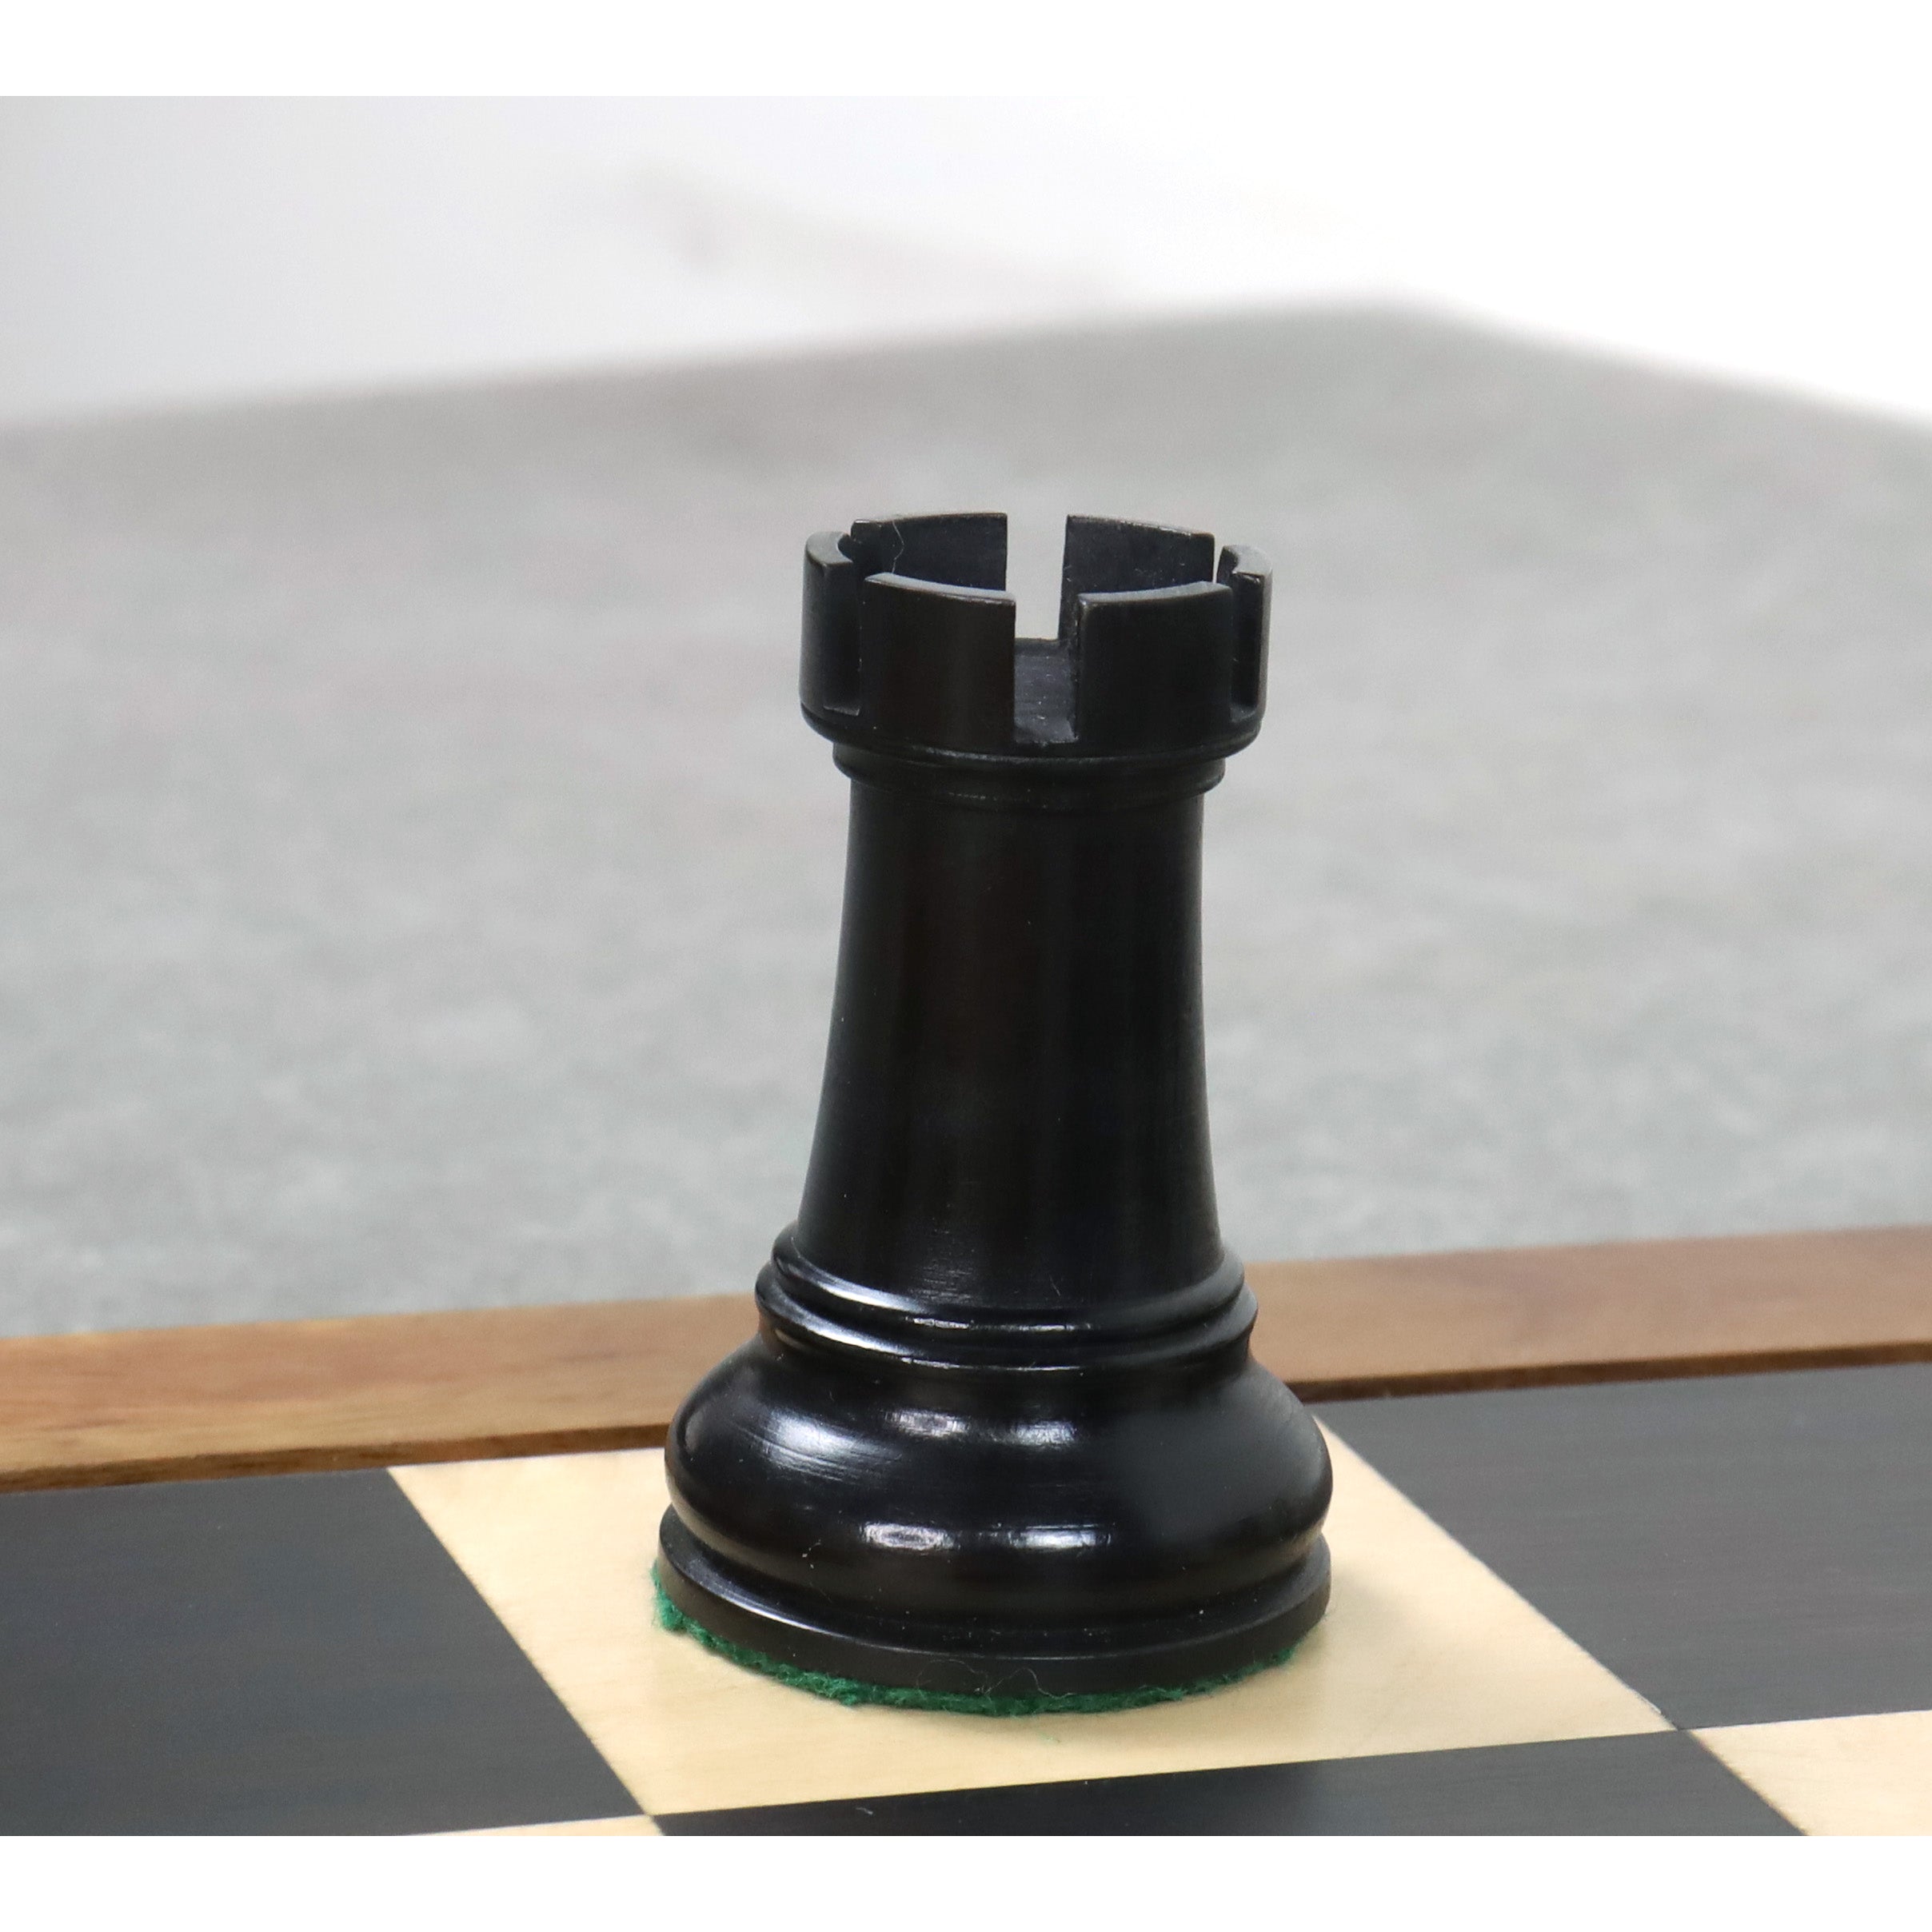 Leningrad Staunton Chess Pieces Only Set - Ebonised Boxwood - 4" King